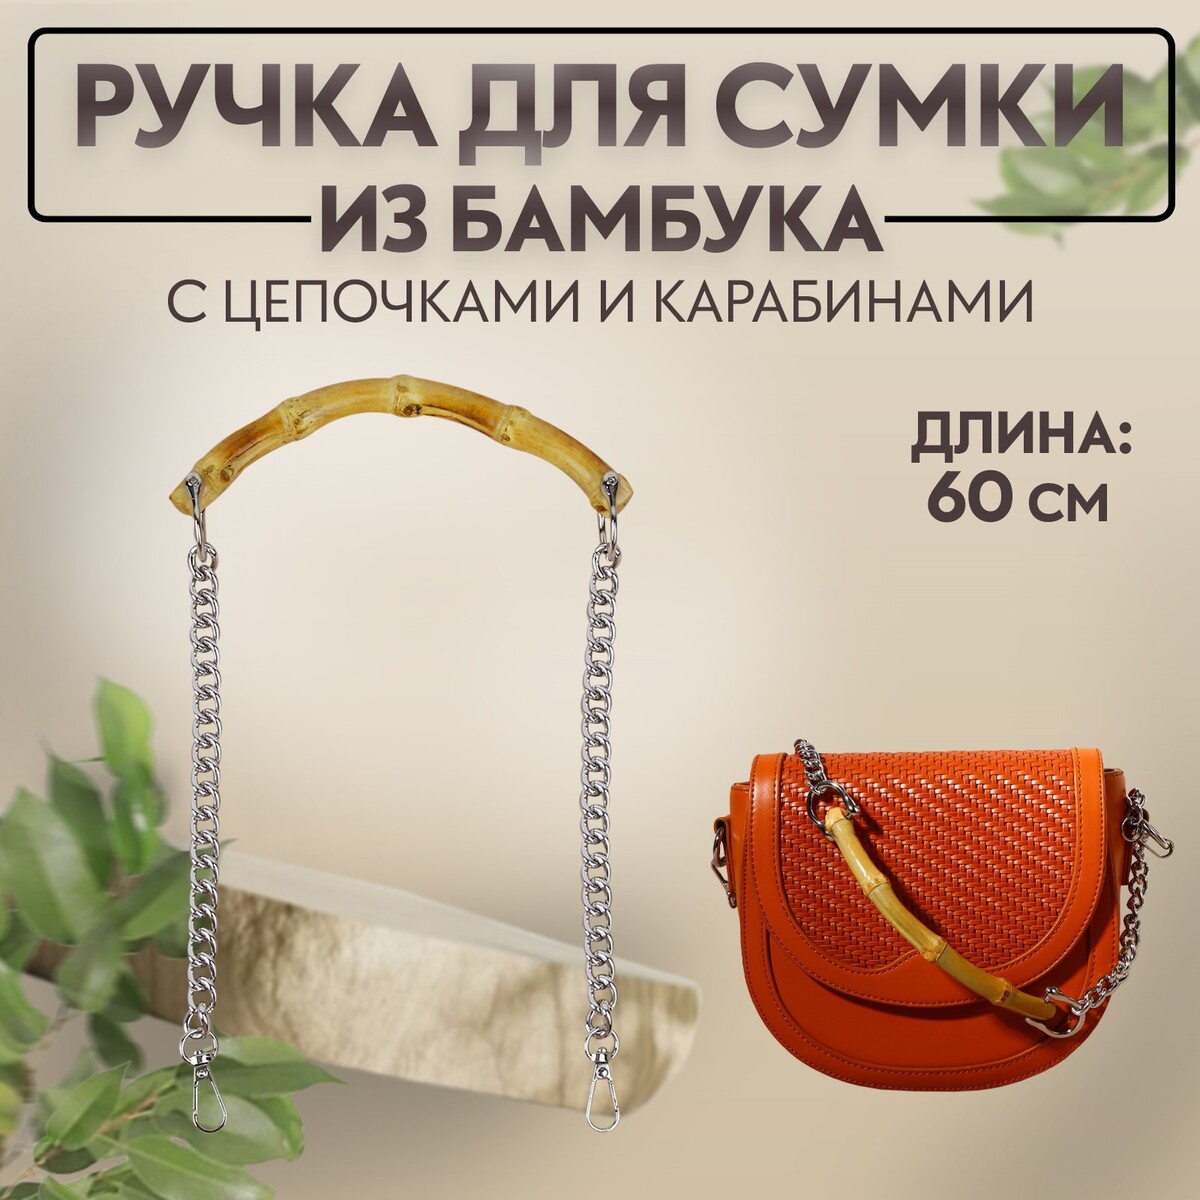 Ручка для сумки, бамбук, с цепочками и карабинами, 60 см, цвет серебряный ручка для сумки с цепочками и карабинами 120 × 1 8 см бордовый